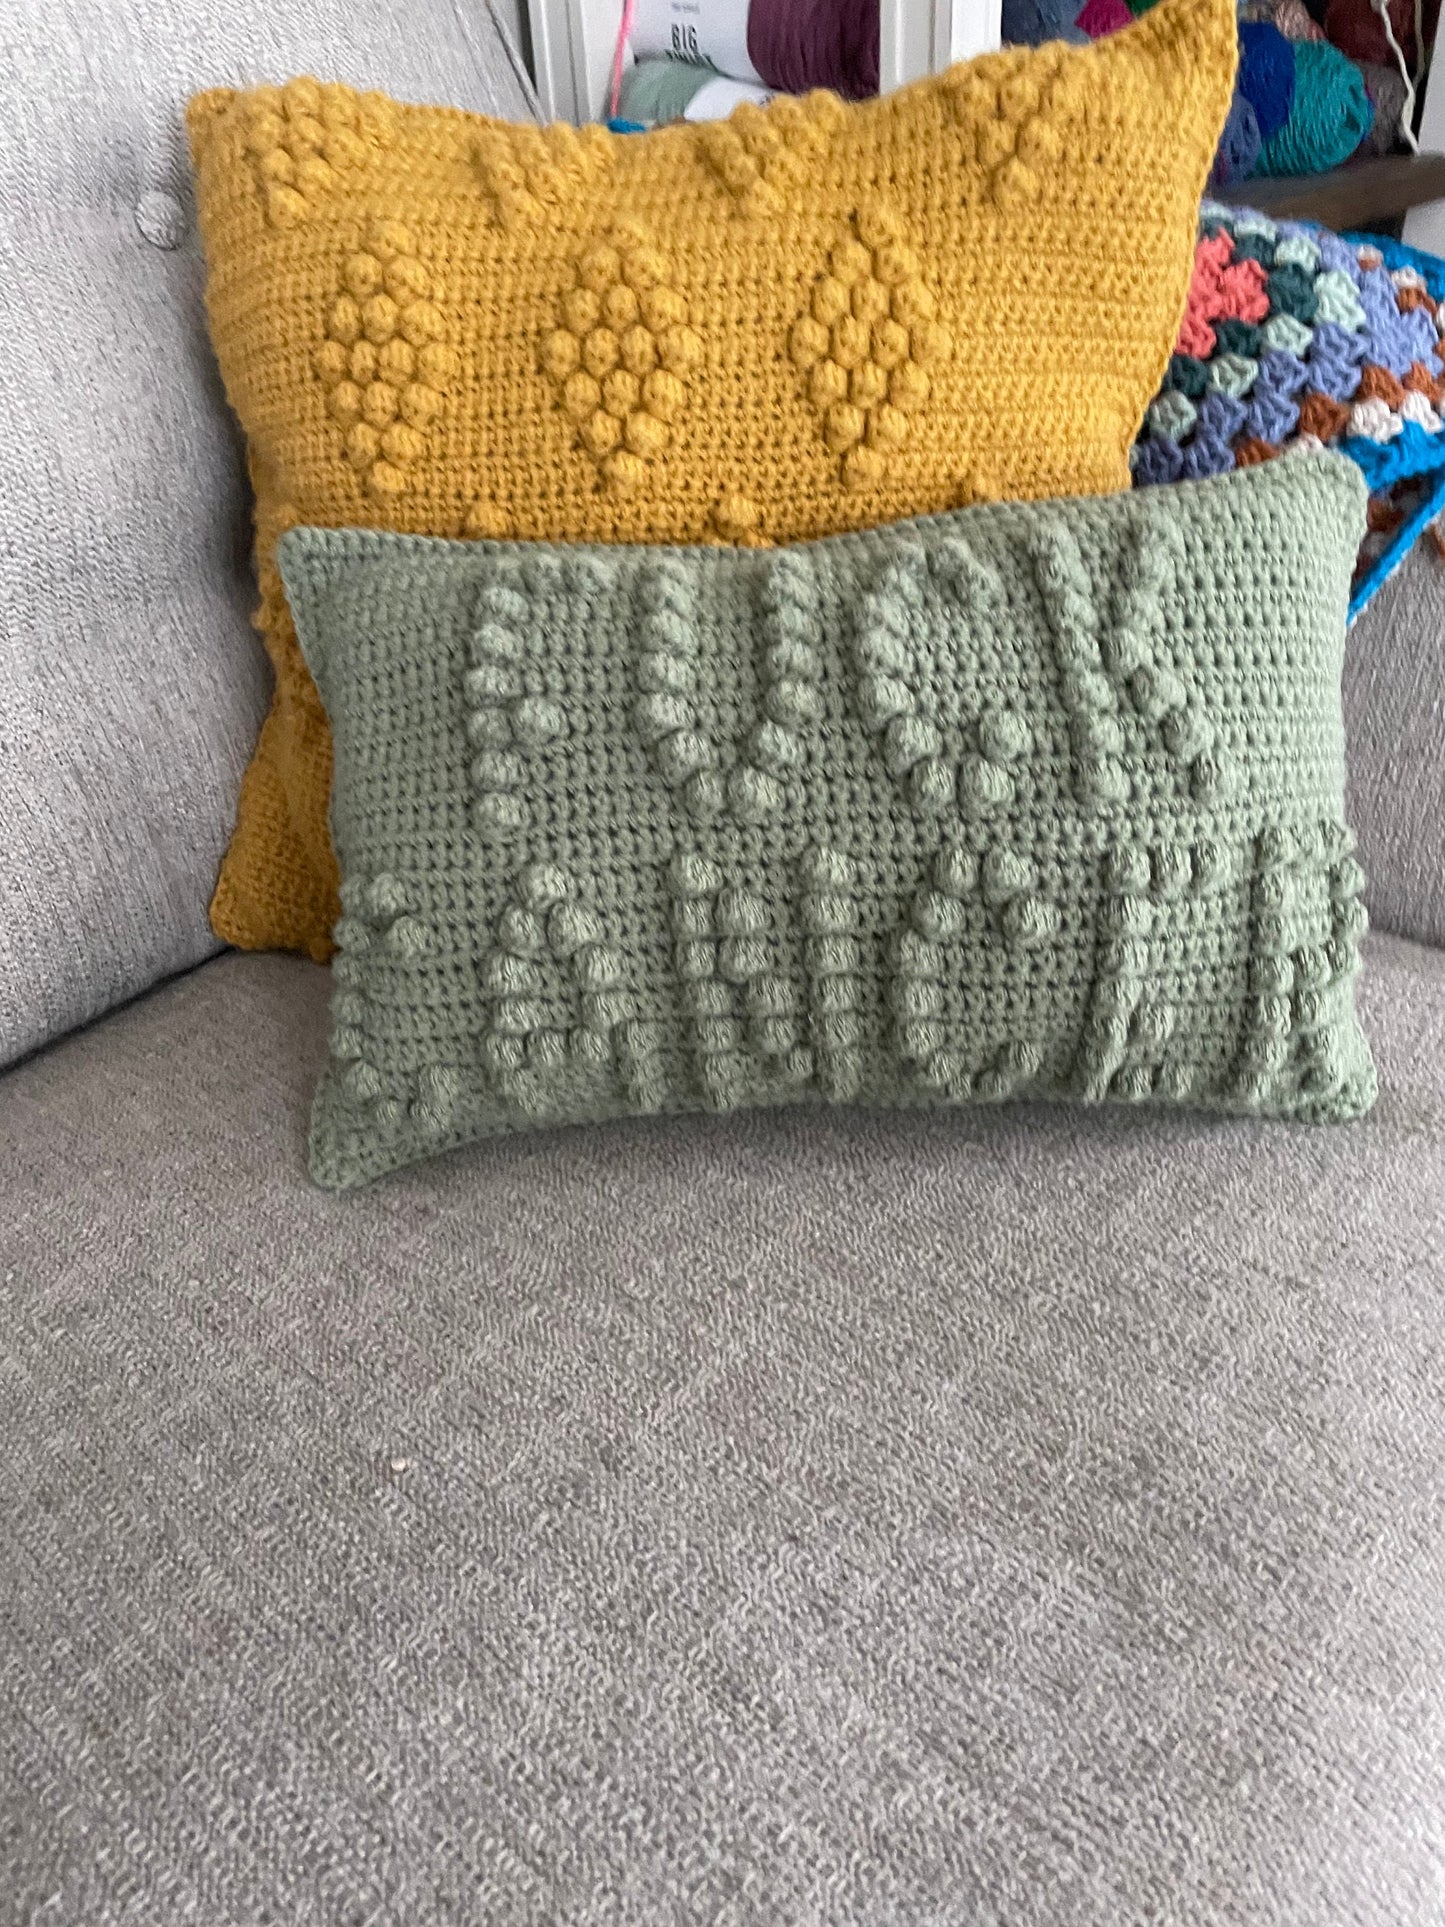 CROCHET PATTERN- Fuck Cancer Crochet Pillow